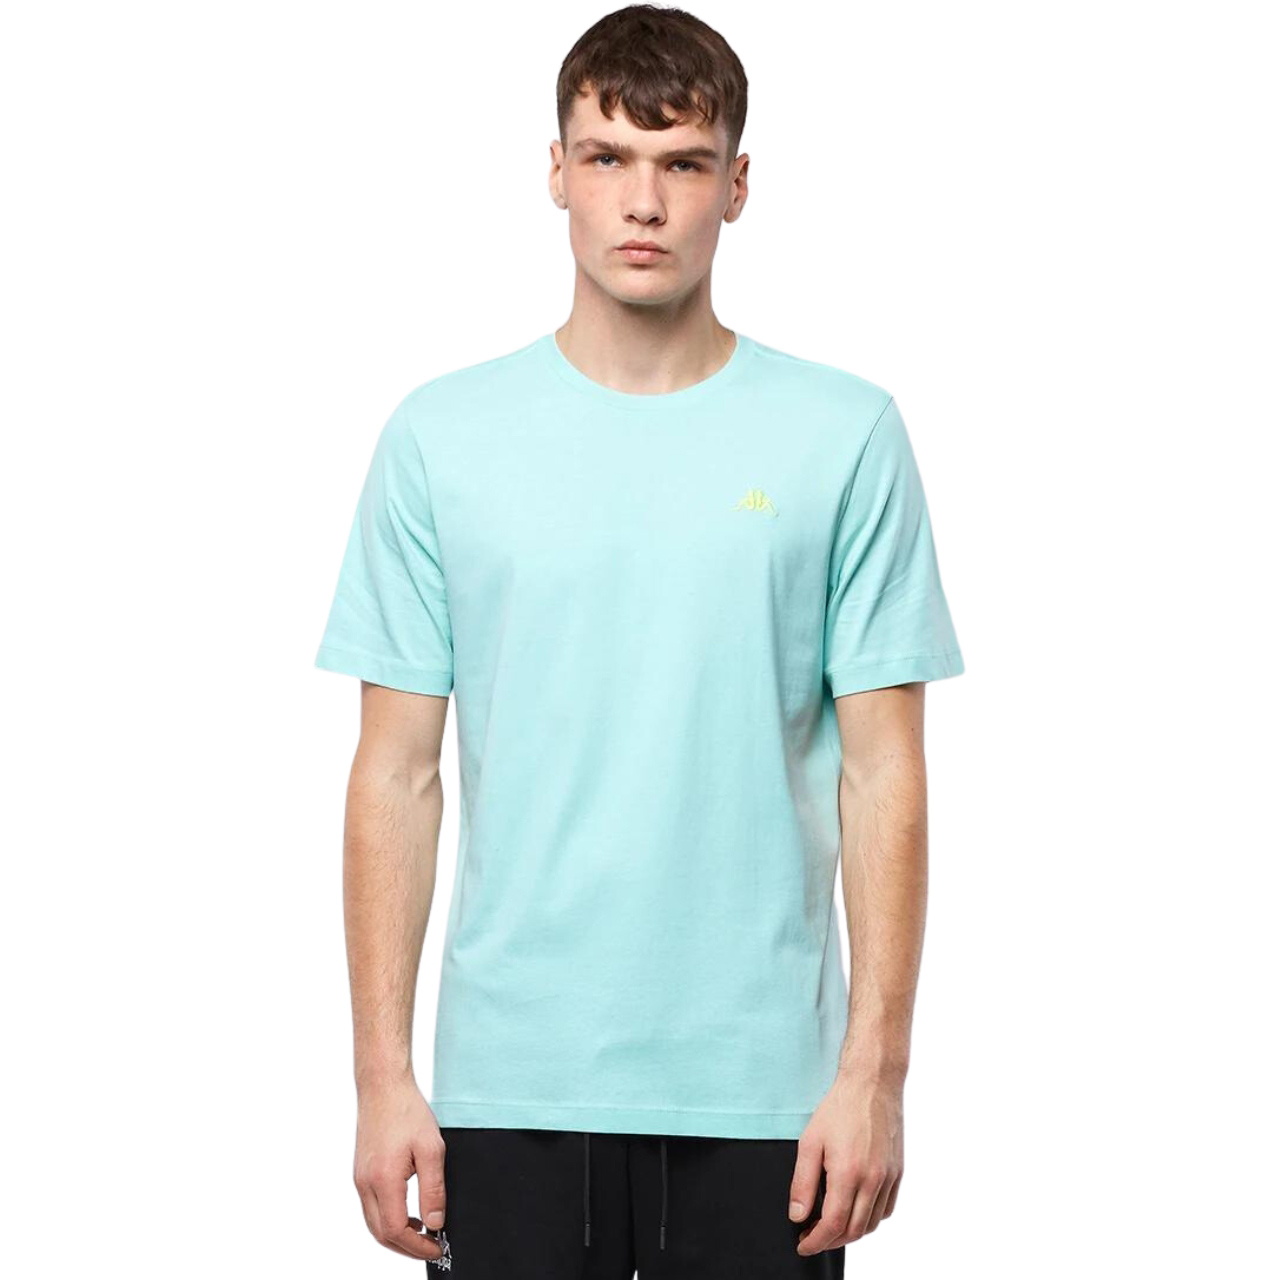 Koszulka męska Kappa błękitna 313002 14-4809 » Mężczyzna » Odzież » Koszulki - sklep internetowy MaxxxSport